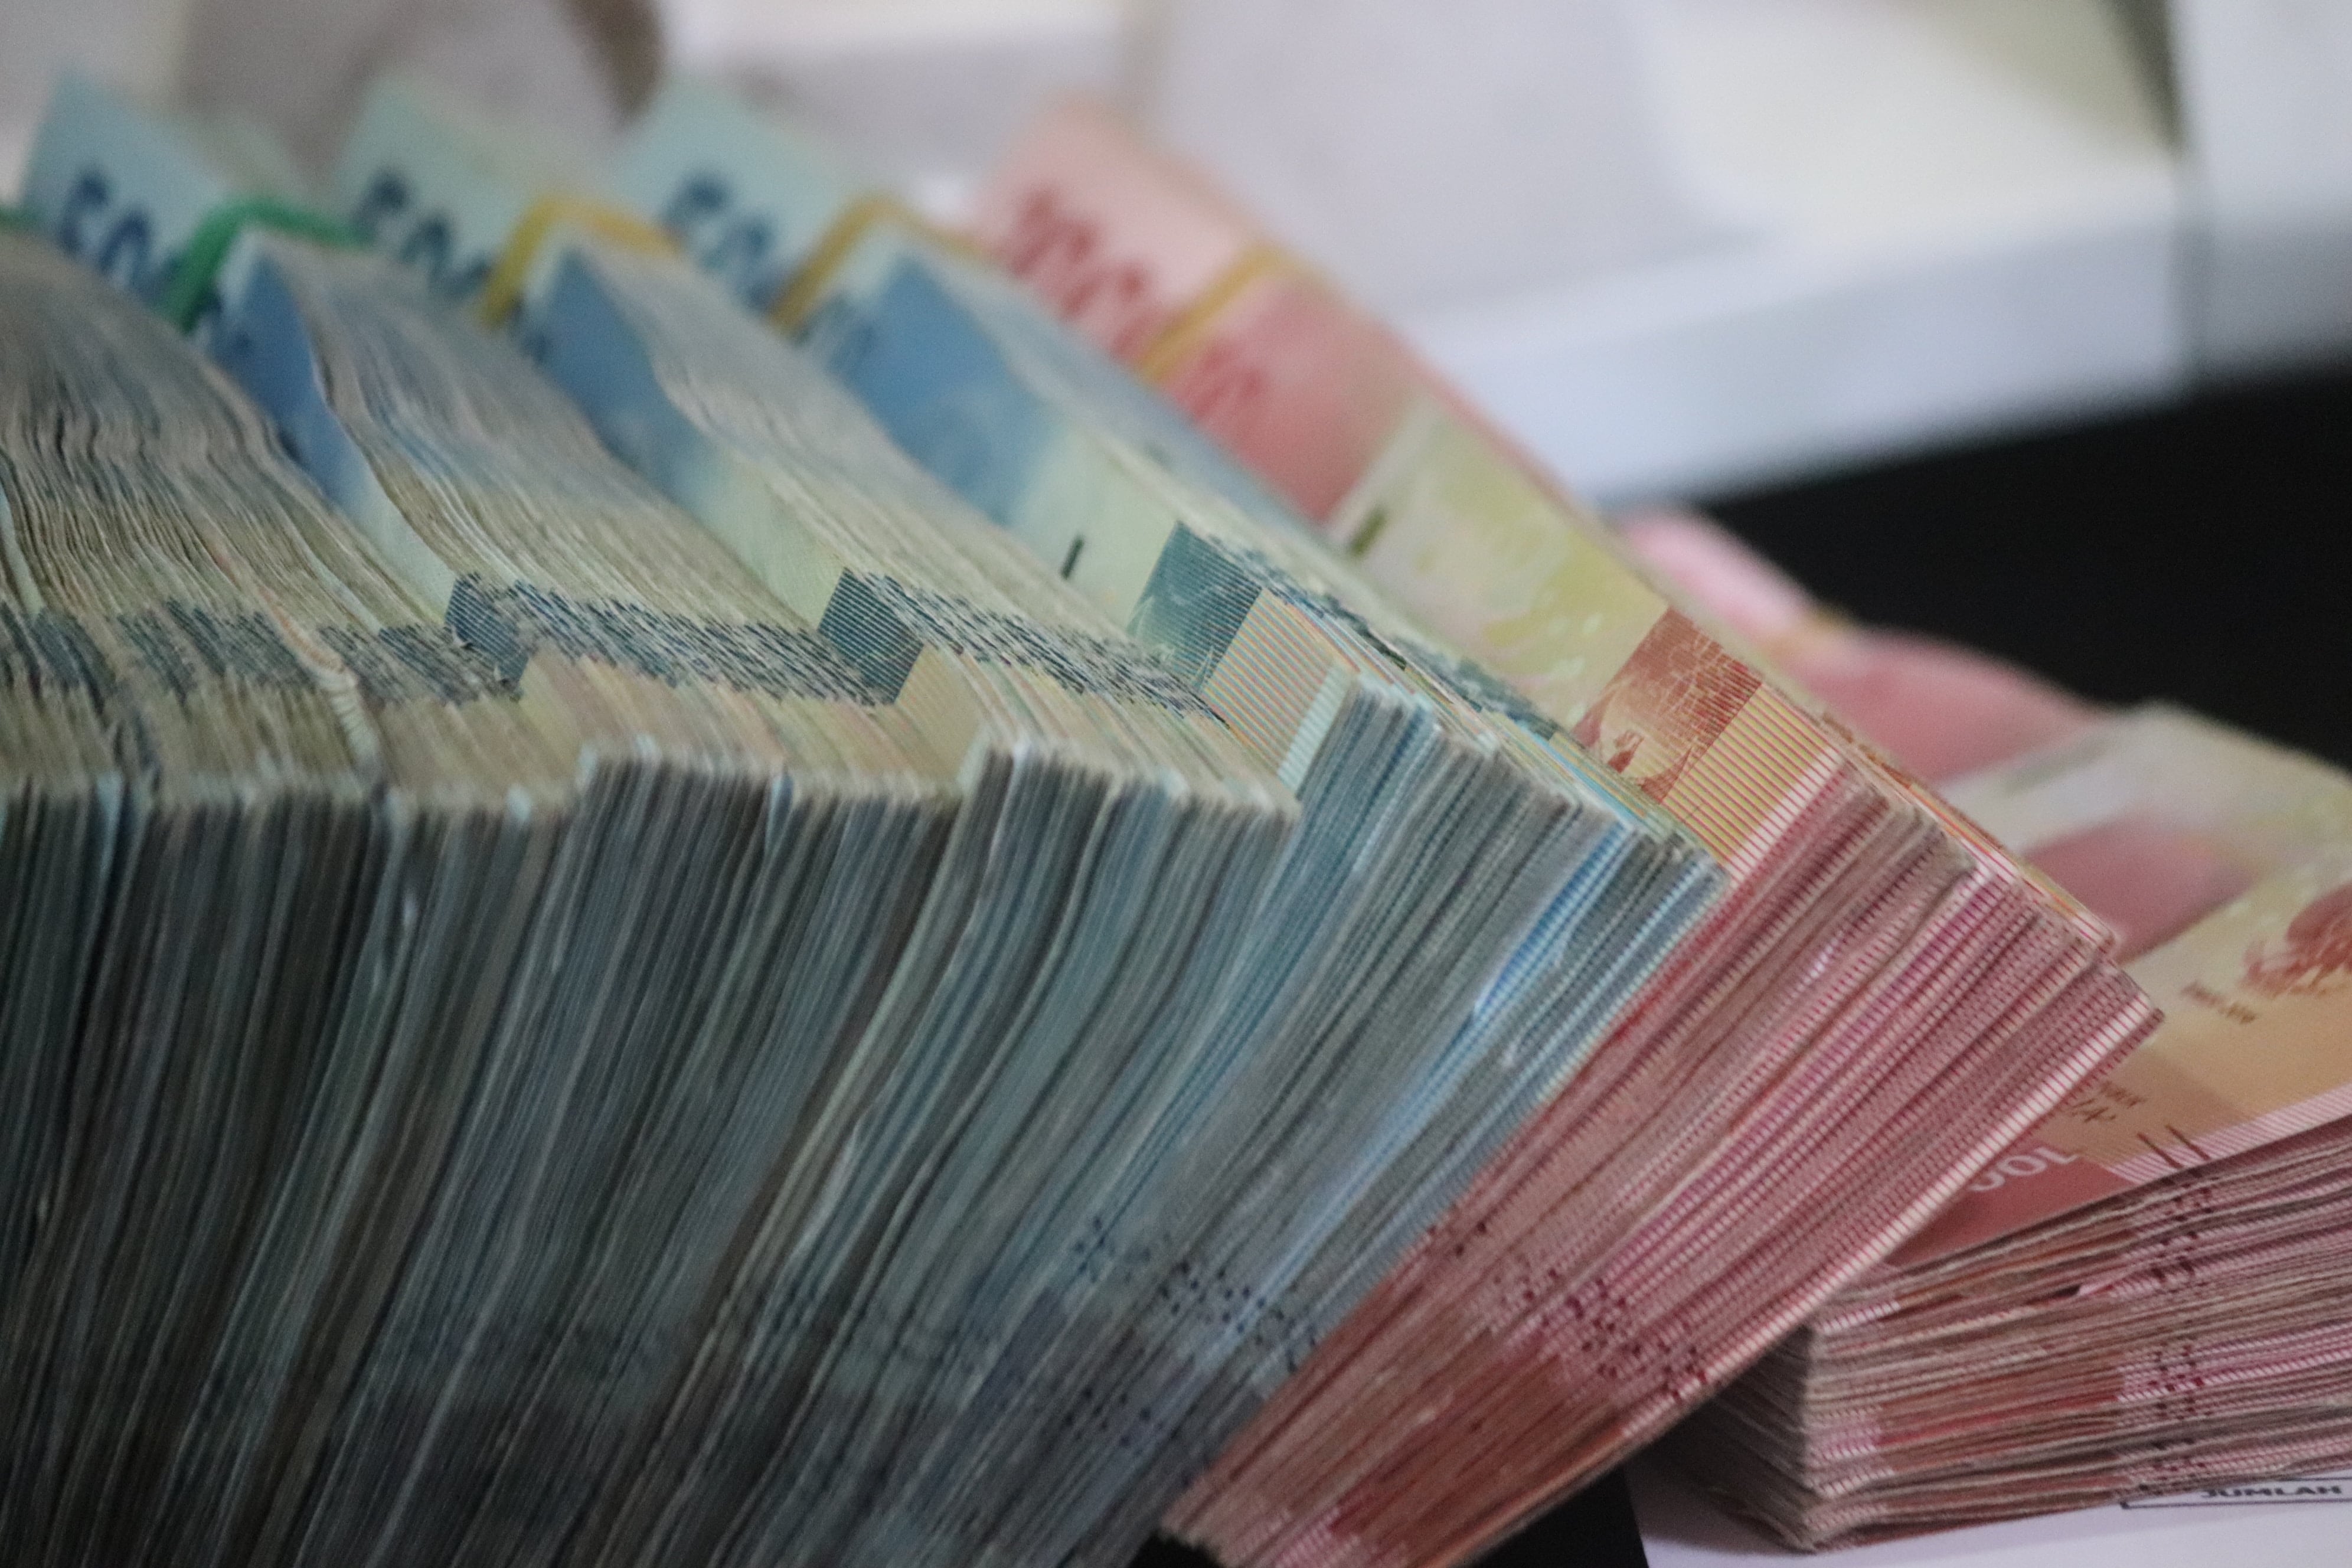 Los billetes de 500 pesos son los favoritos de los falsificadores